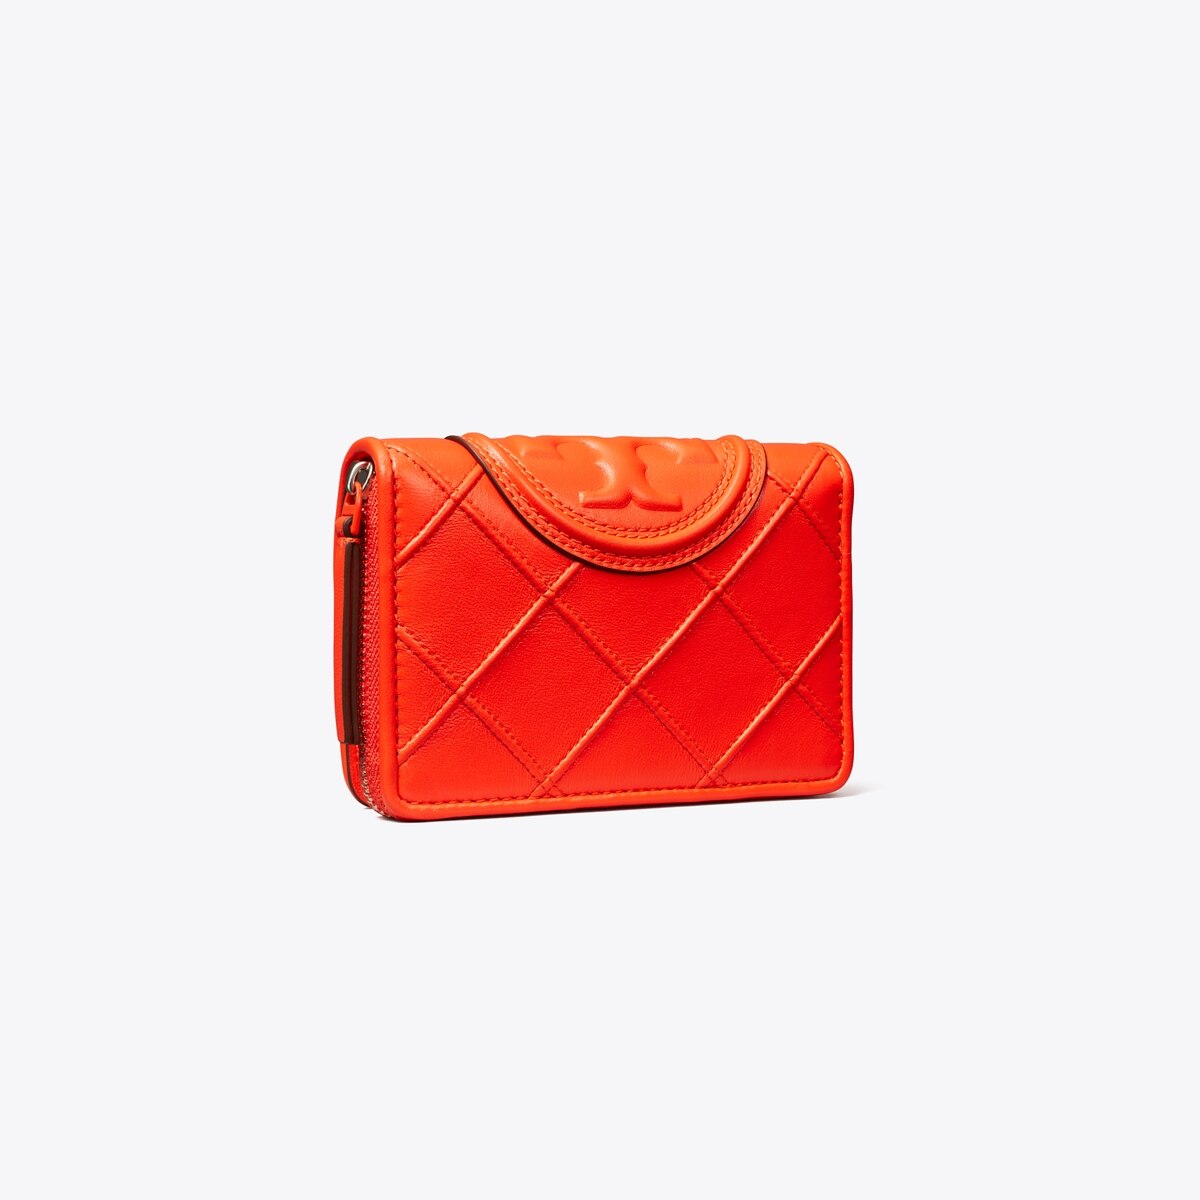 Chanel Wallets in Bi-Fold